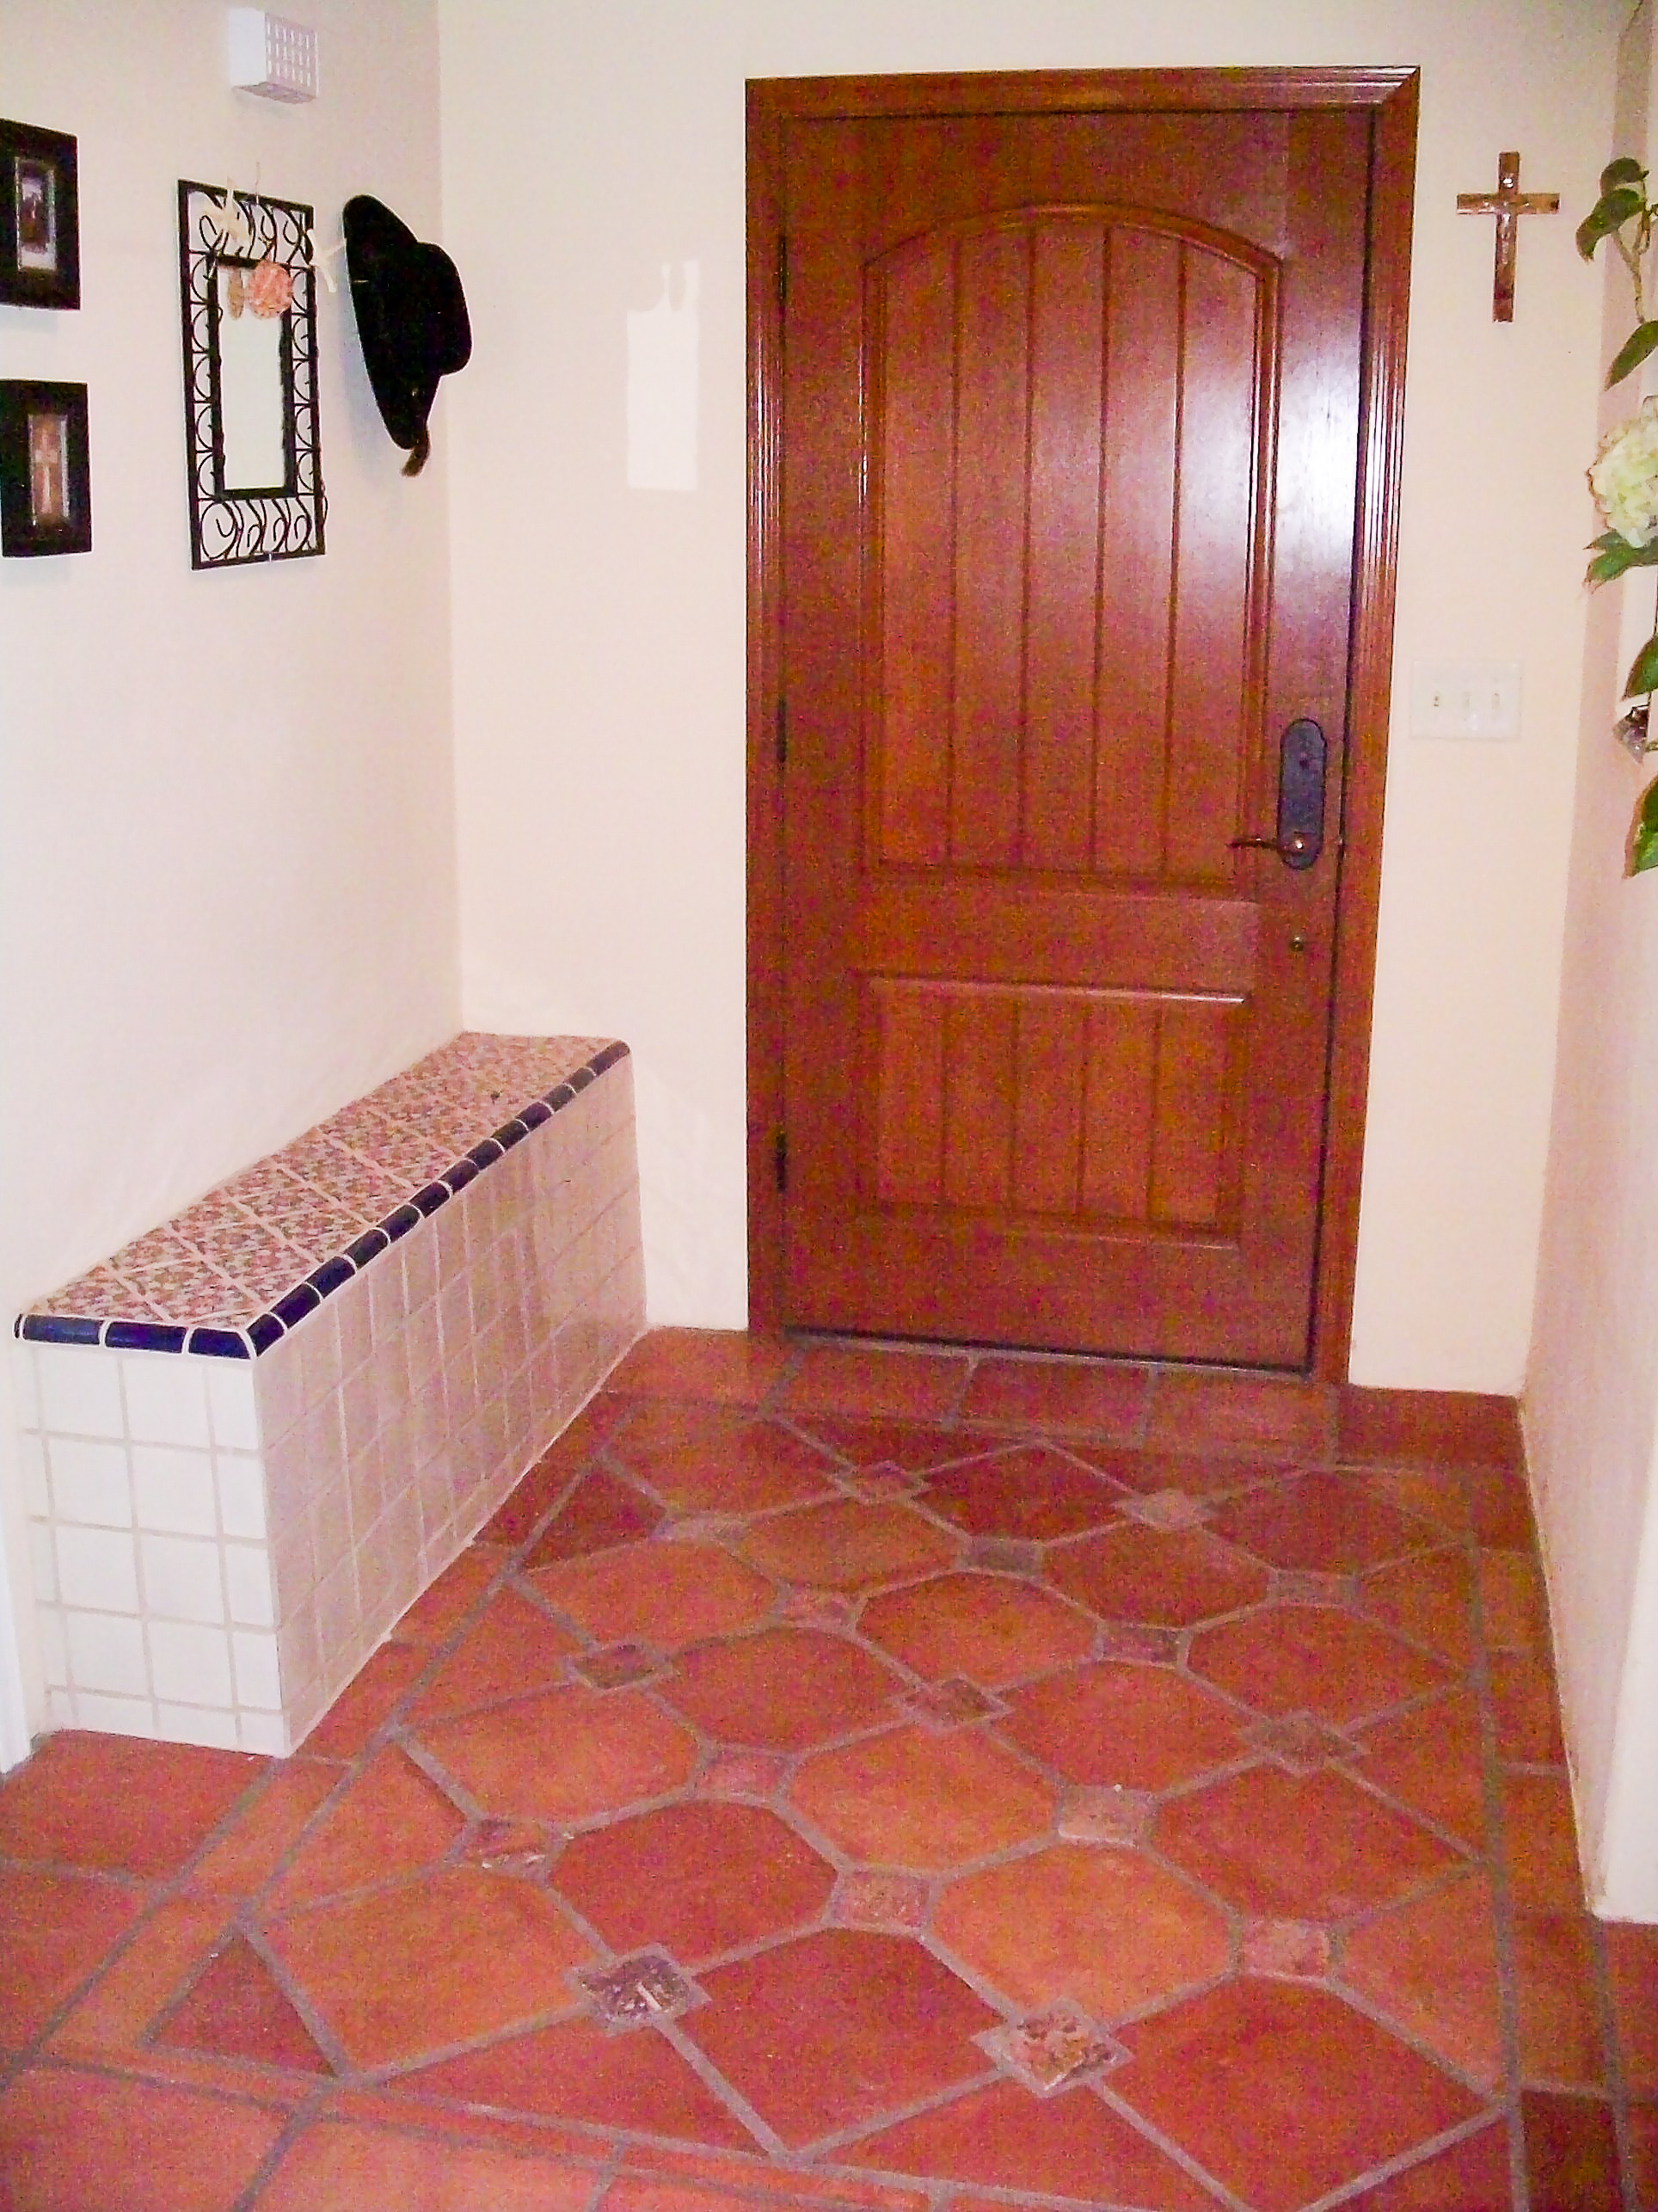 Tile Floor Entryway